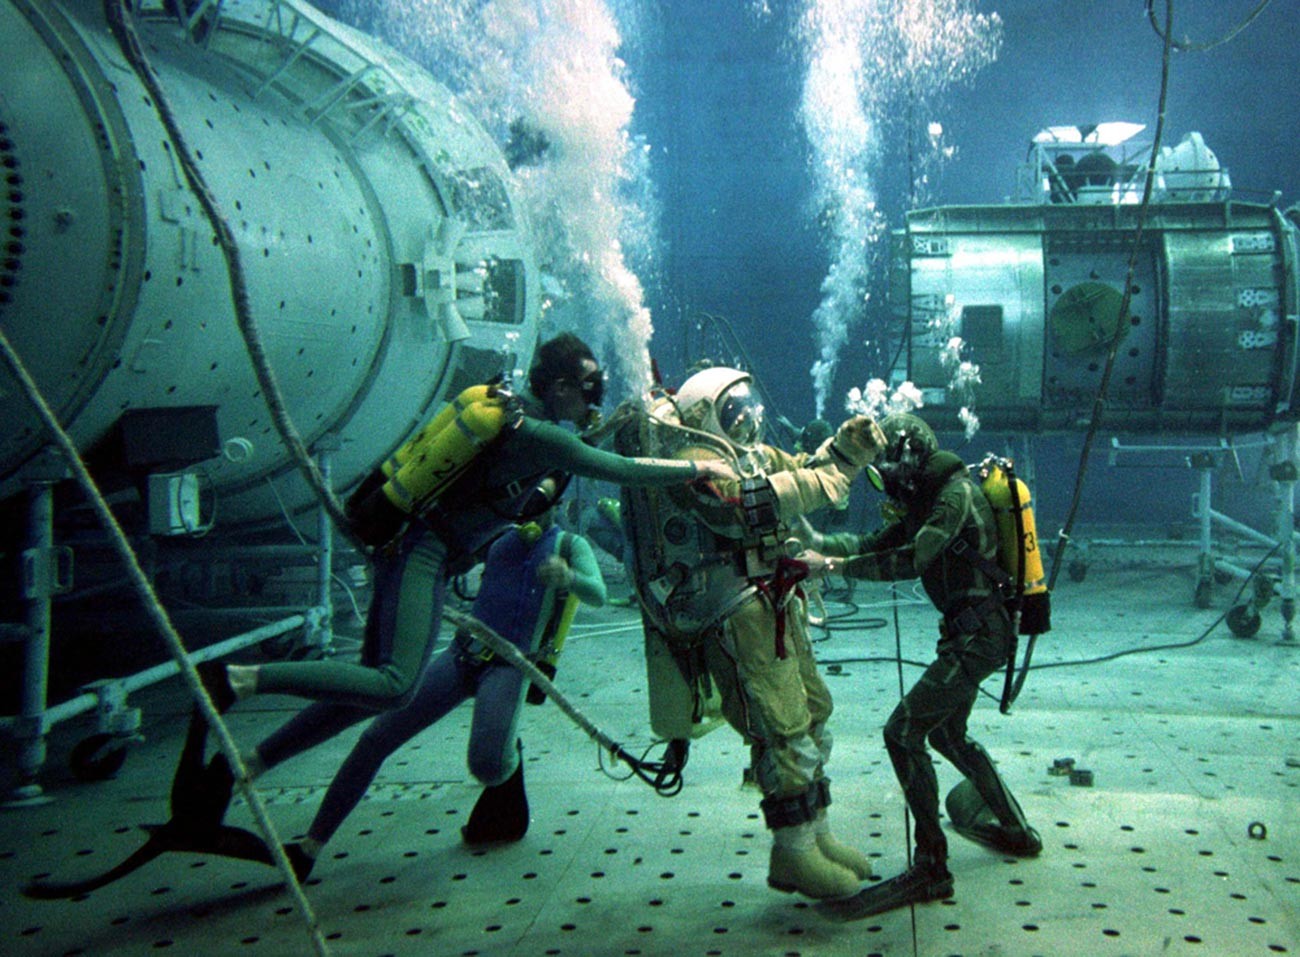 Tests subaquatiques sur une réplique endommagée de la station Mir en juillet 1997 